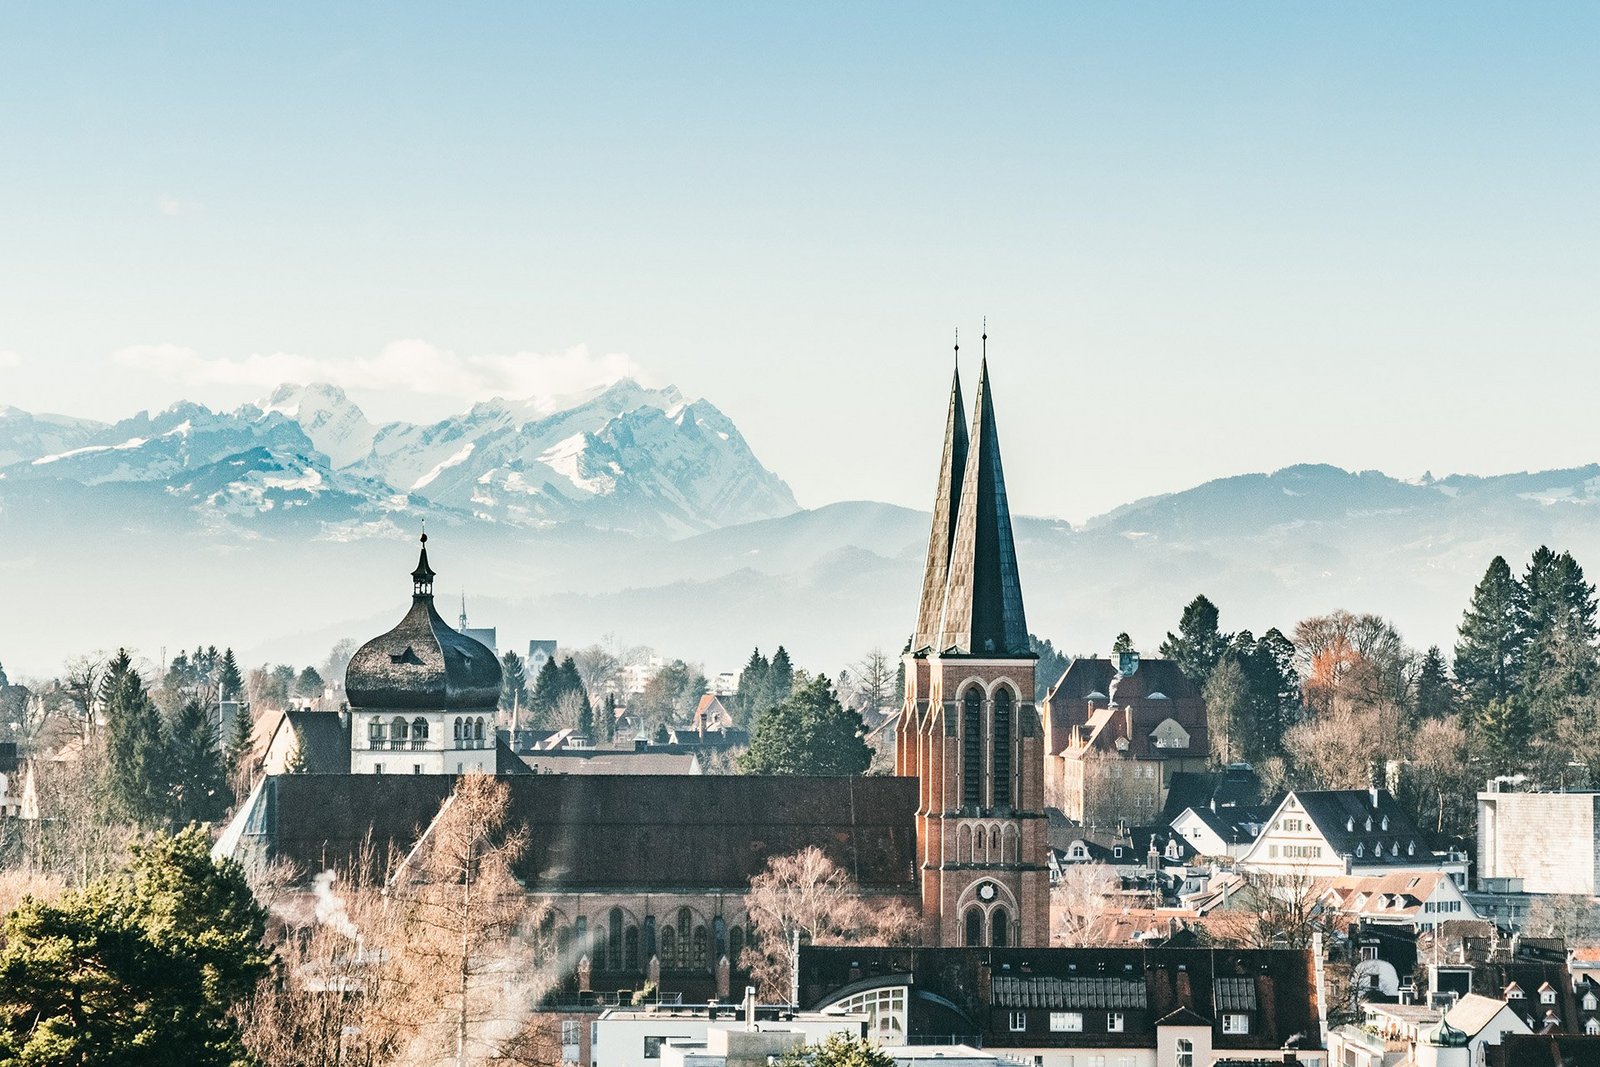 Panoramaansicht des winterlichen Bregenz mit Her-Jesu Kirche im Vordergrund